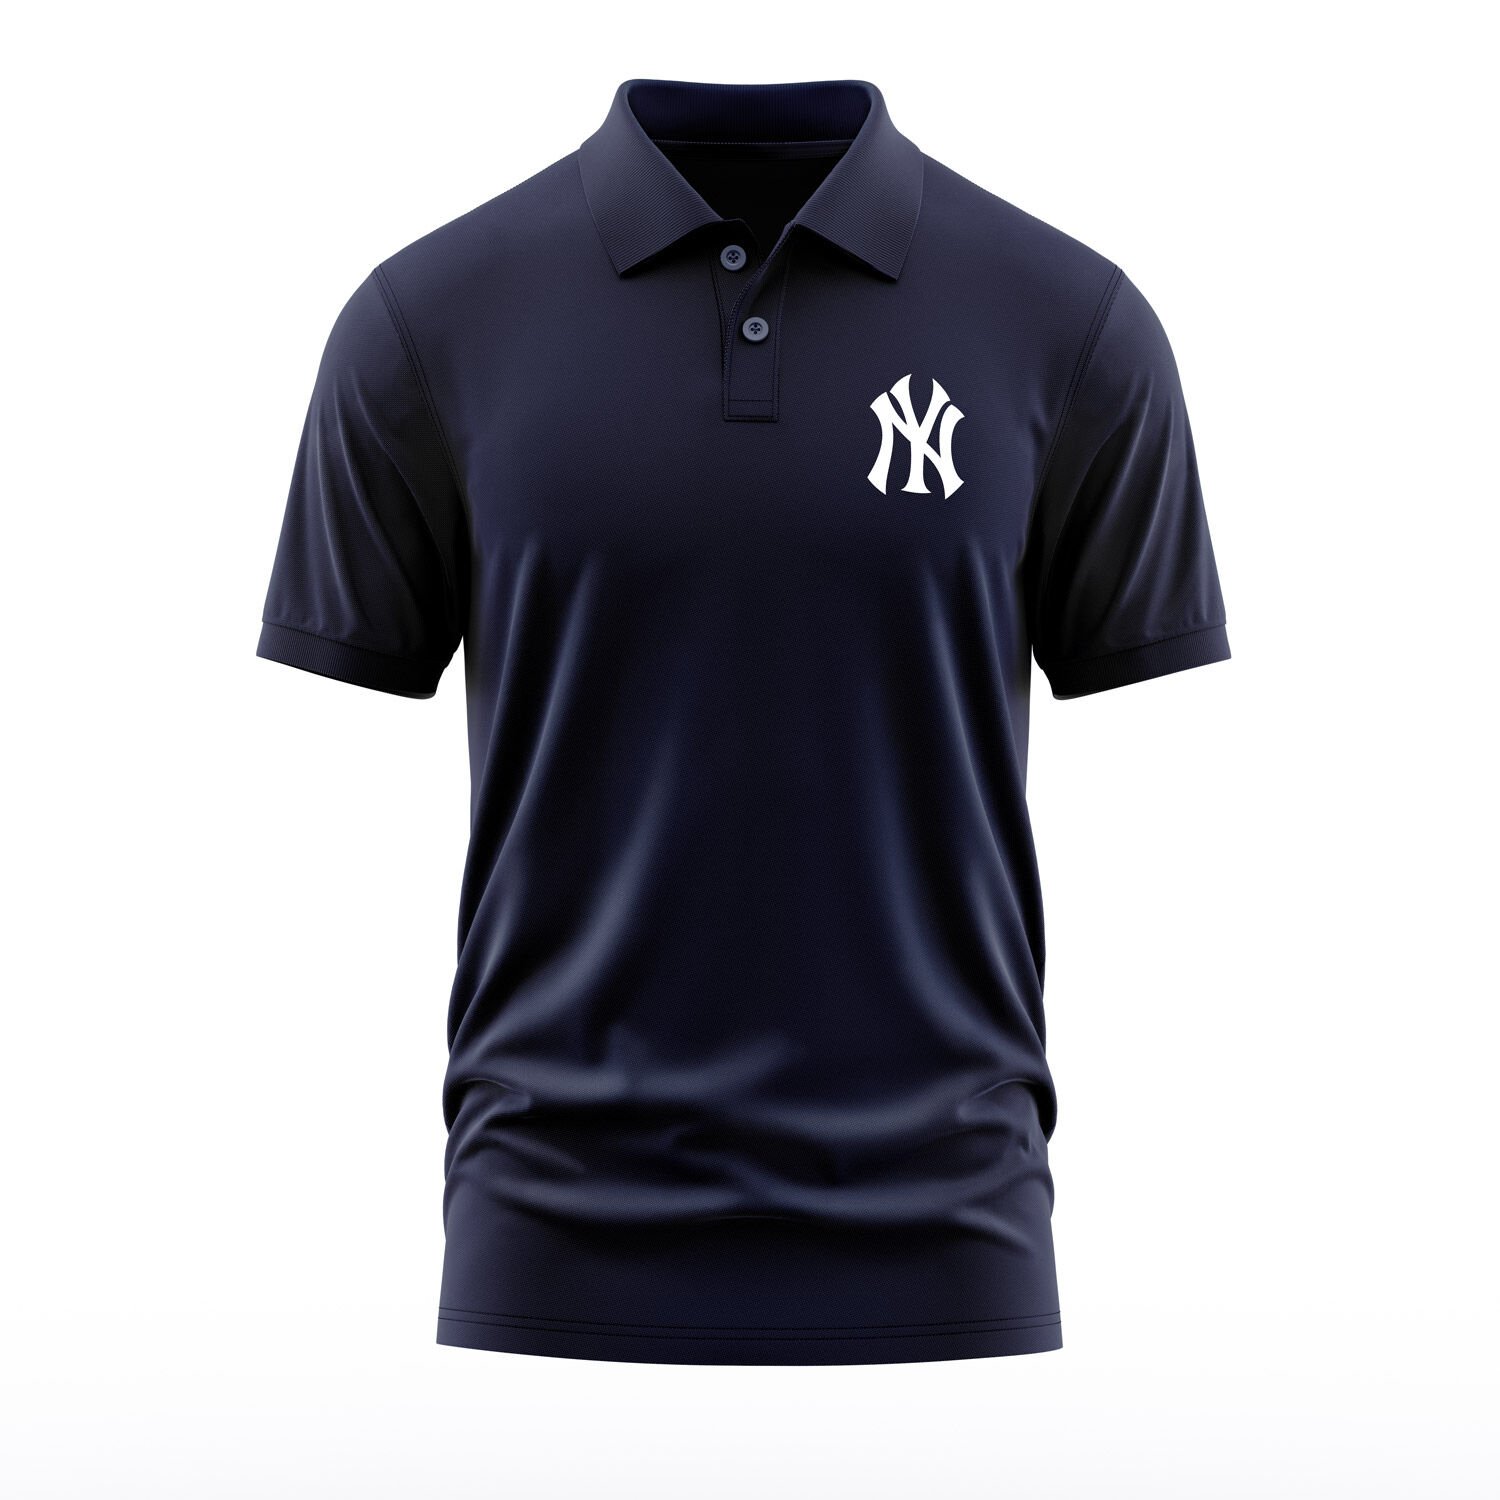 Yankees Koyu Lacivert Polo Tişört